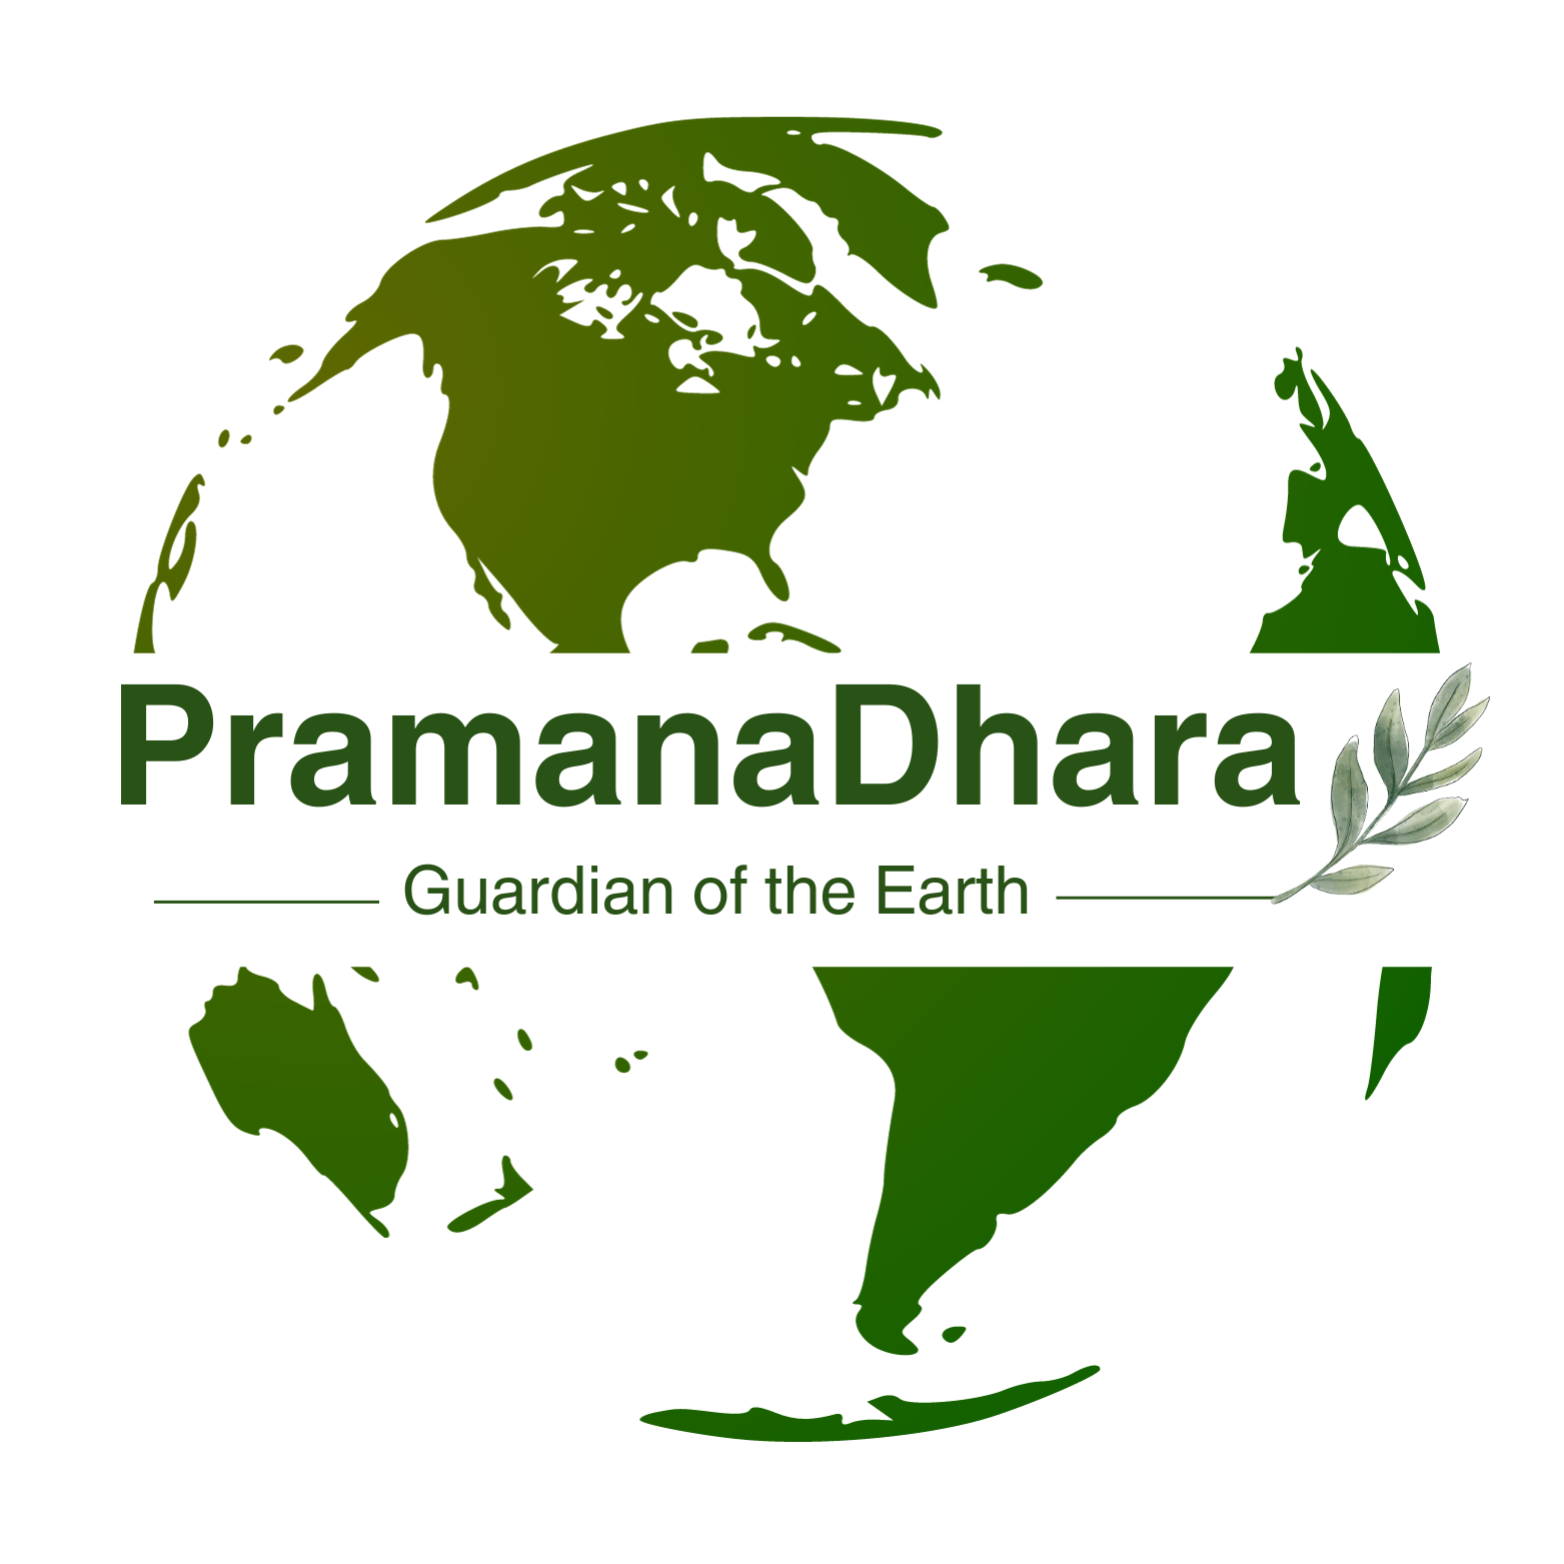 PramanaDhara